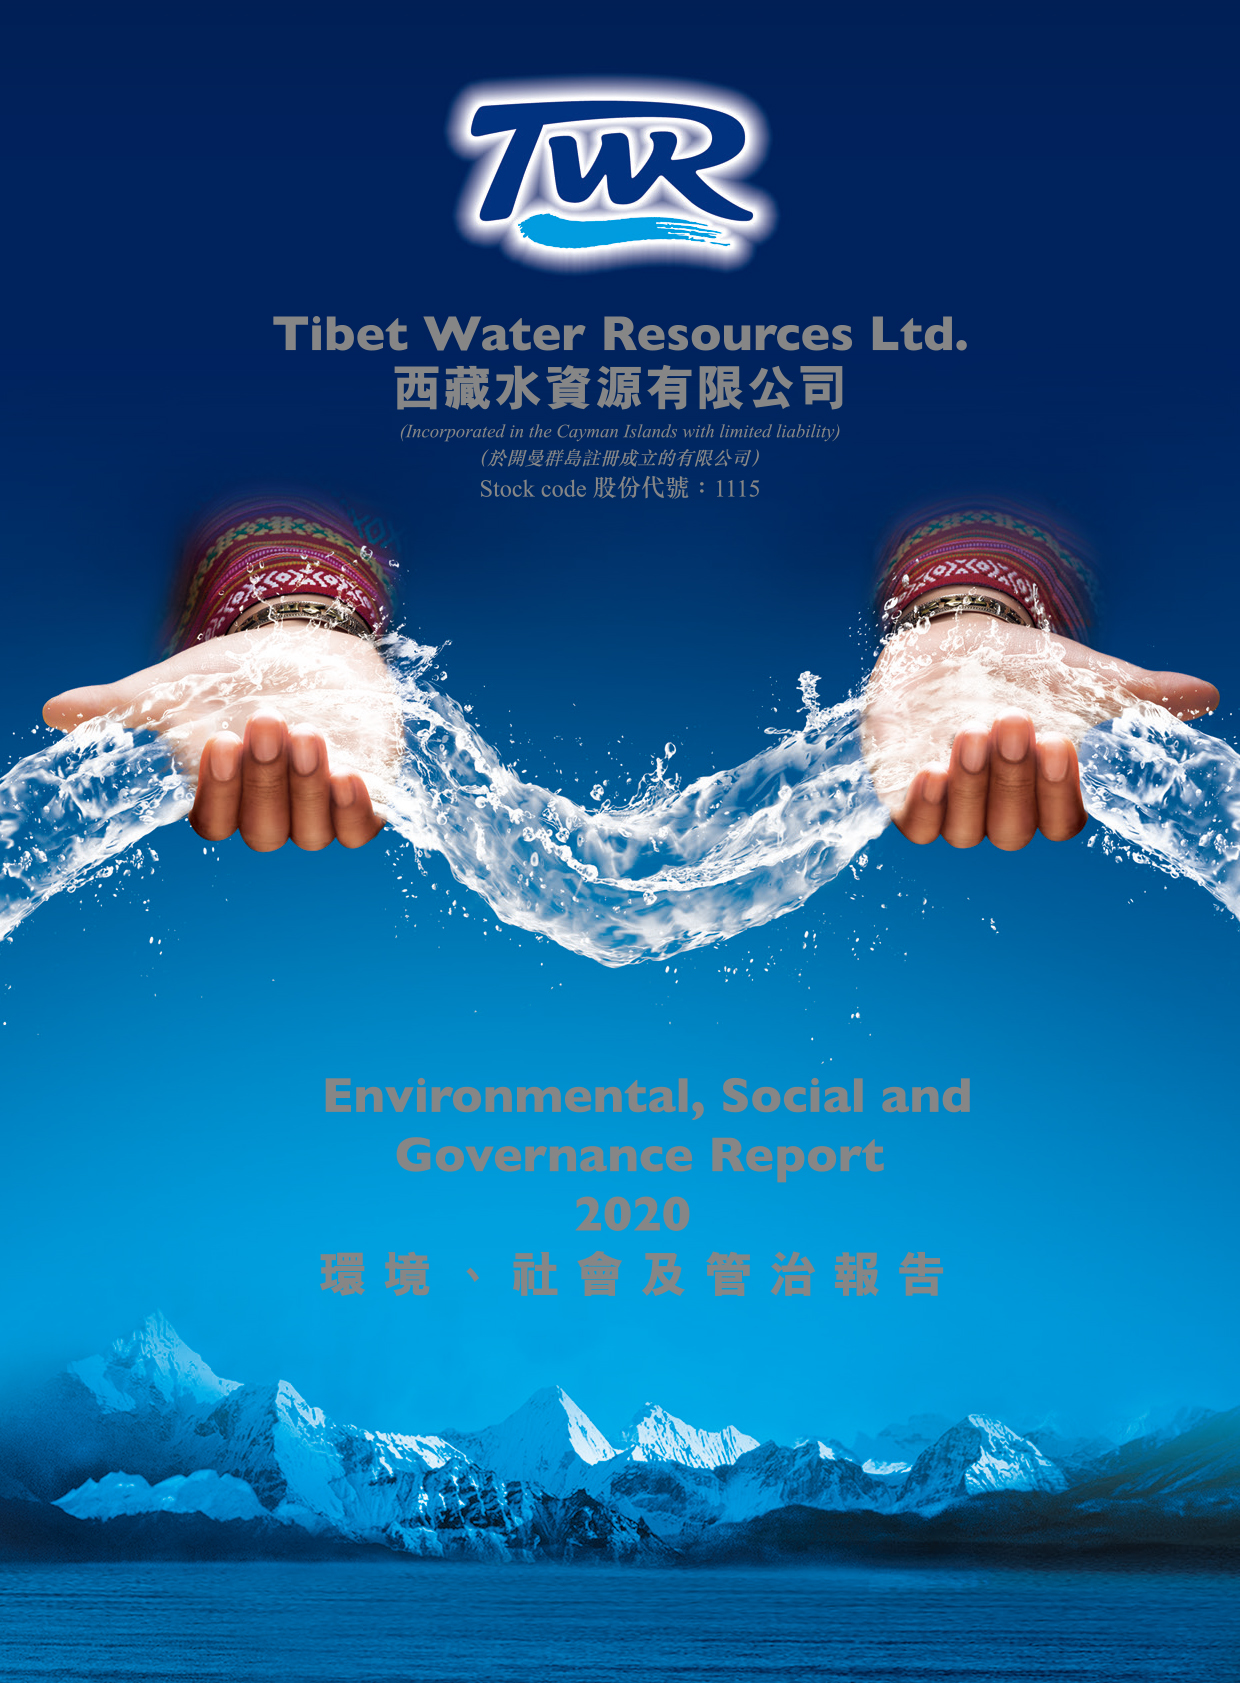 西藏水资源有限公司